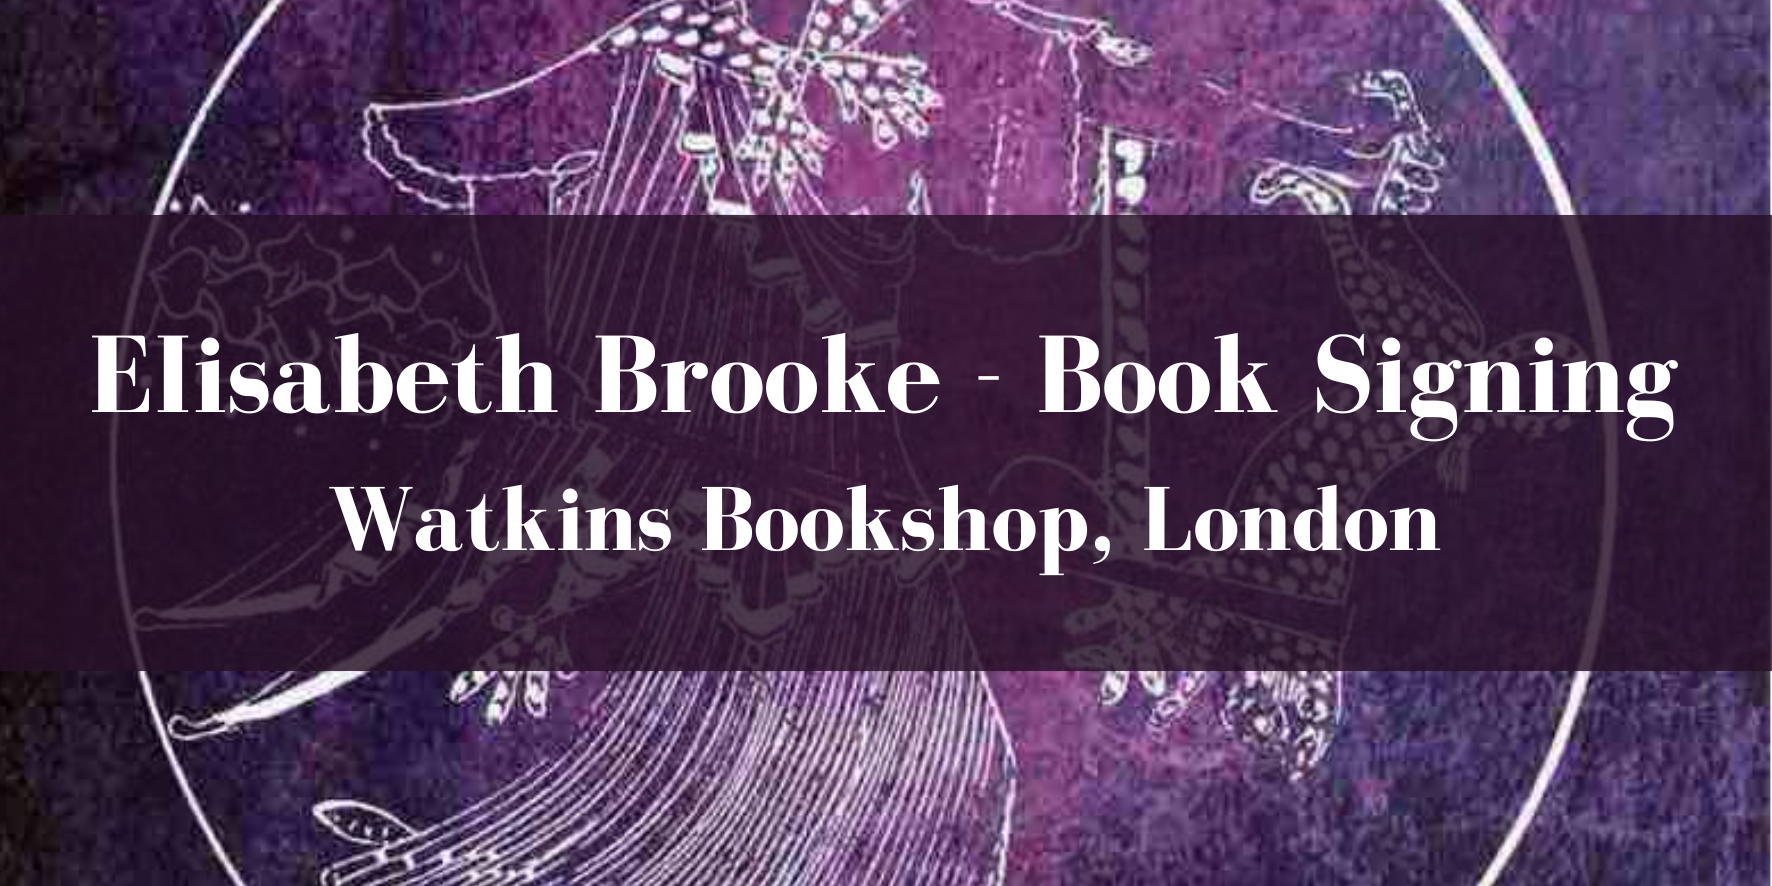 Elisabeth Brooke - Book Signing